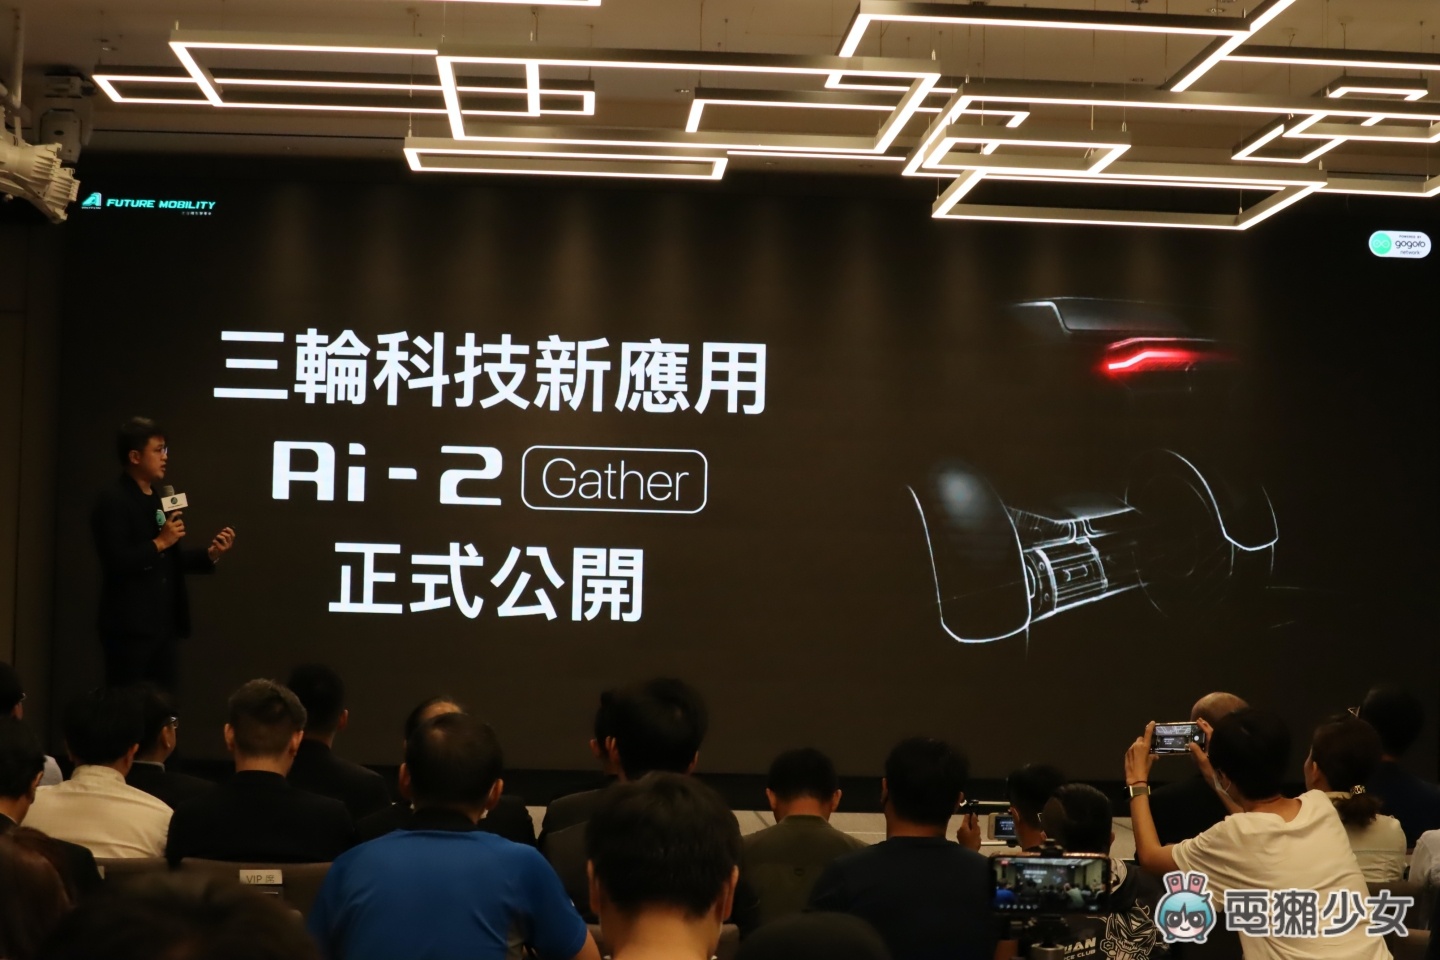 宏佳騰發表全新三輪概念車『 Ai-2 Gather 』瞄準商務物流 下雨天還可以加裝遮雨棚